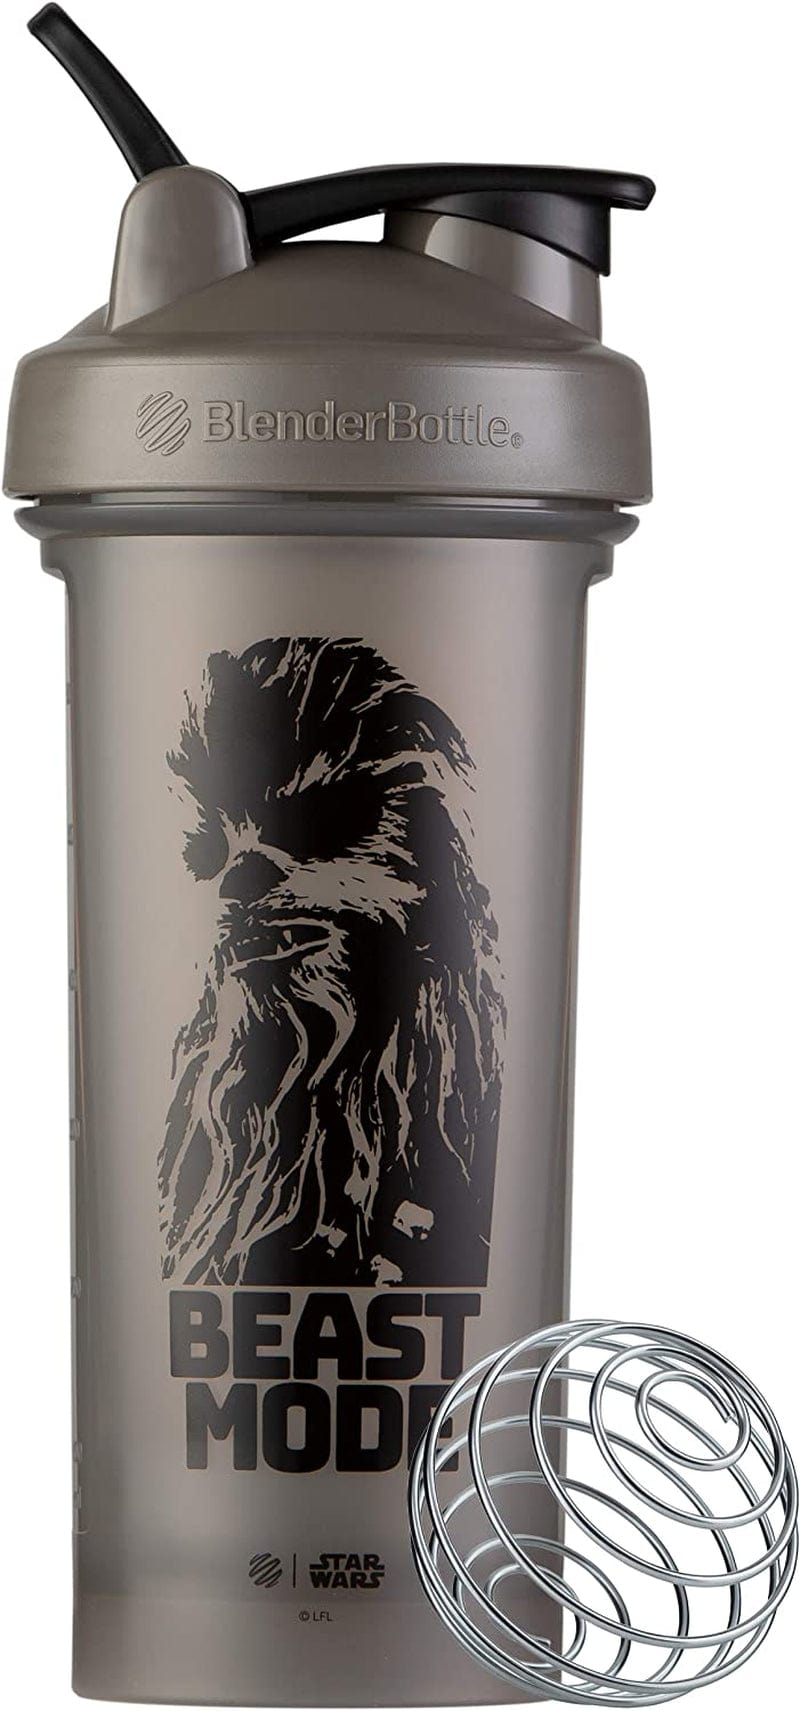 Blenderbottle Star Wars Classic V2 Shaker Bottle Perfect for Protein Shakes and Pre Workout, 28-Ounce, Boba Fett Helmet Home & Garden > Kitchen & Dining > Barware BlenderBottle Beast Mode Star Wars 